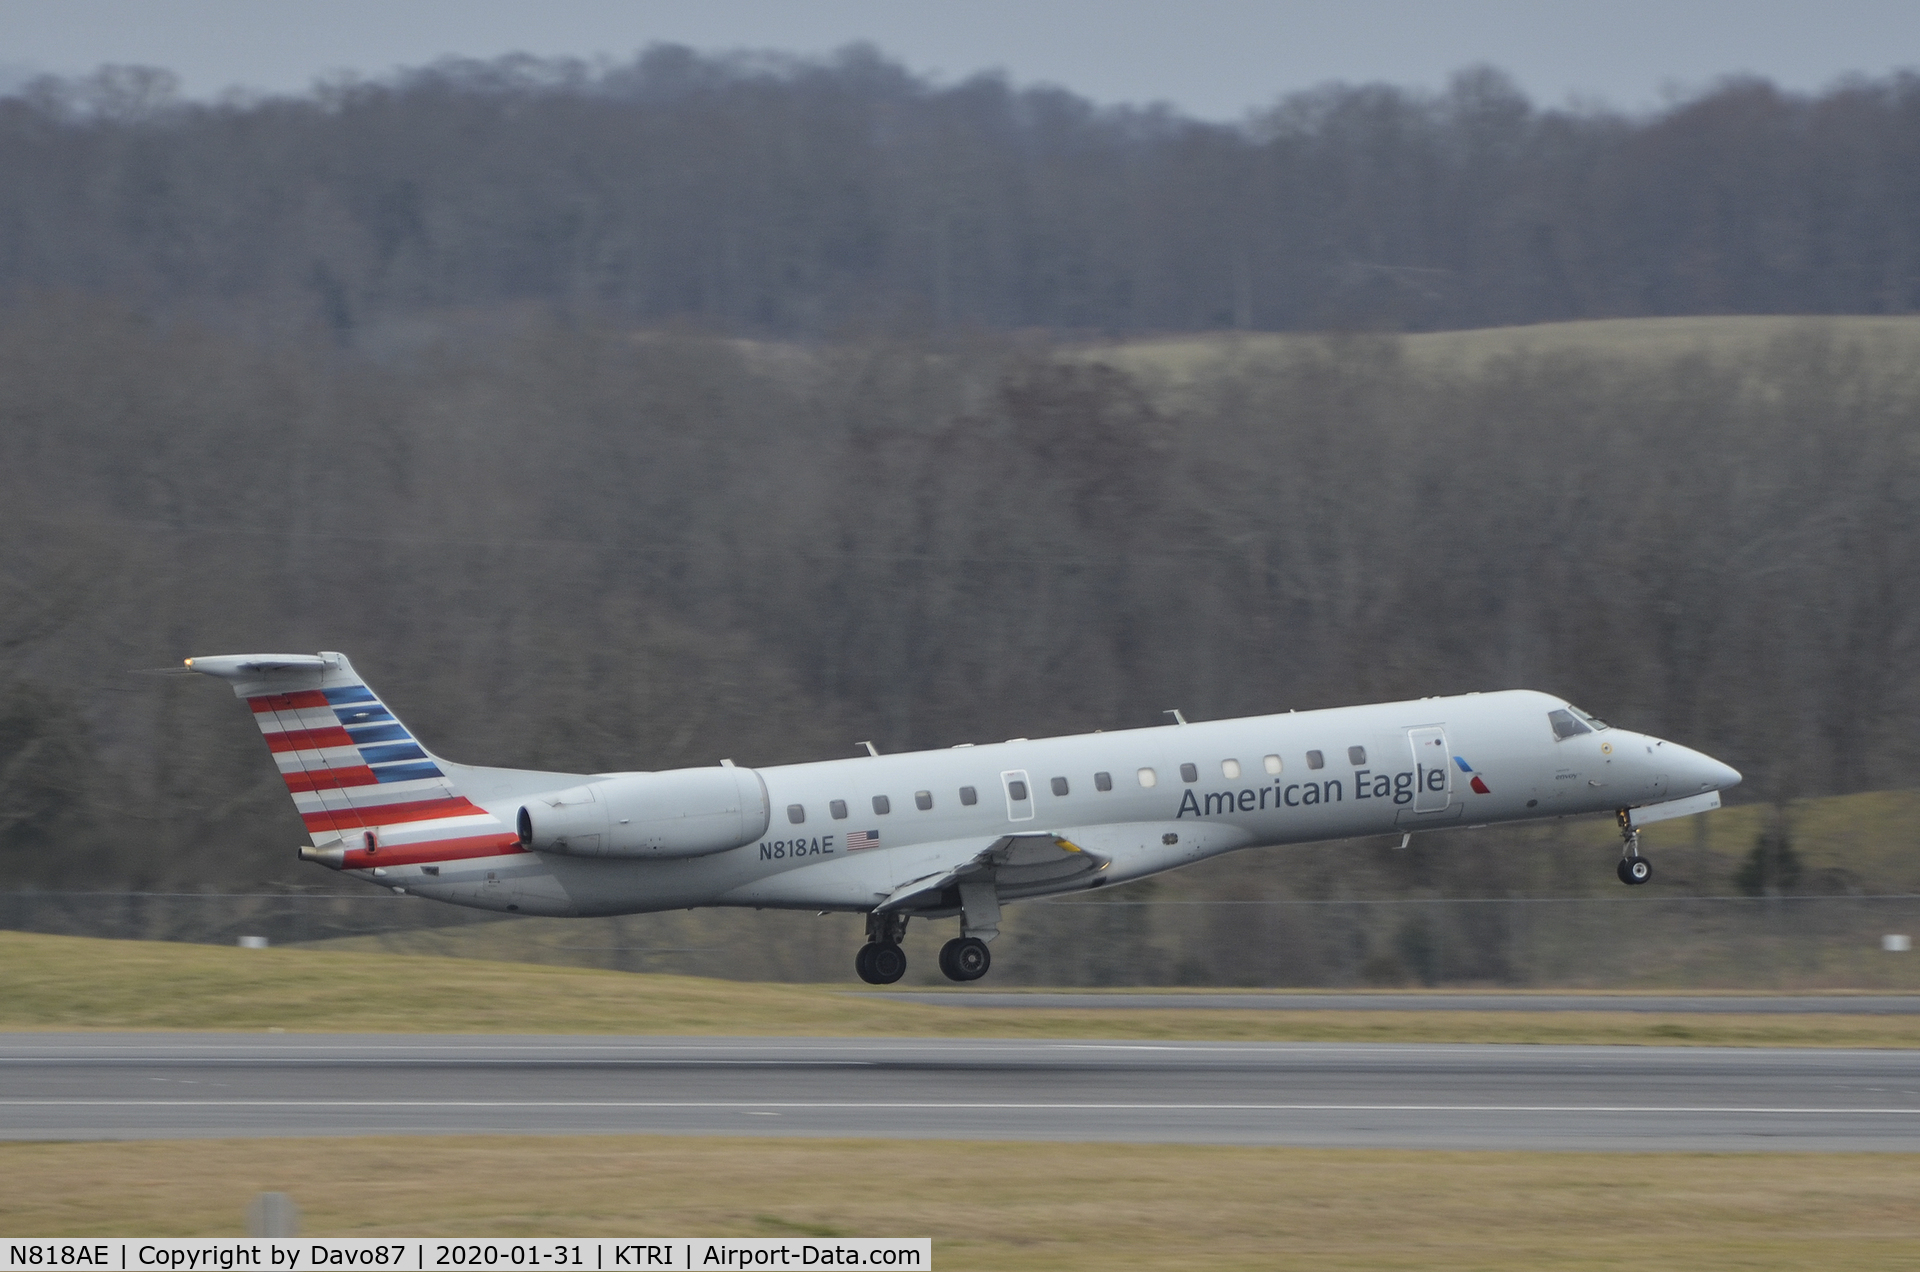 N818AE, 2002 Embraer ERJ-140LR (EMB-135KL) C/N 145561, Landing at Tri-Cities Airport (KTRI) in East Tennessee.